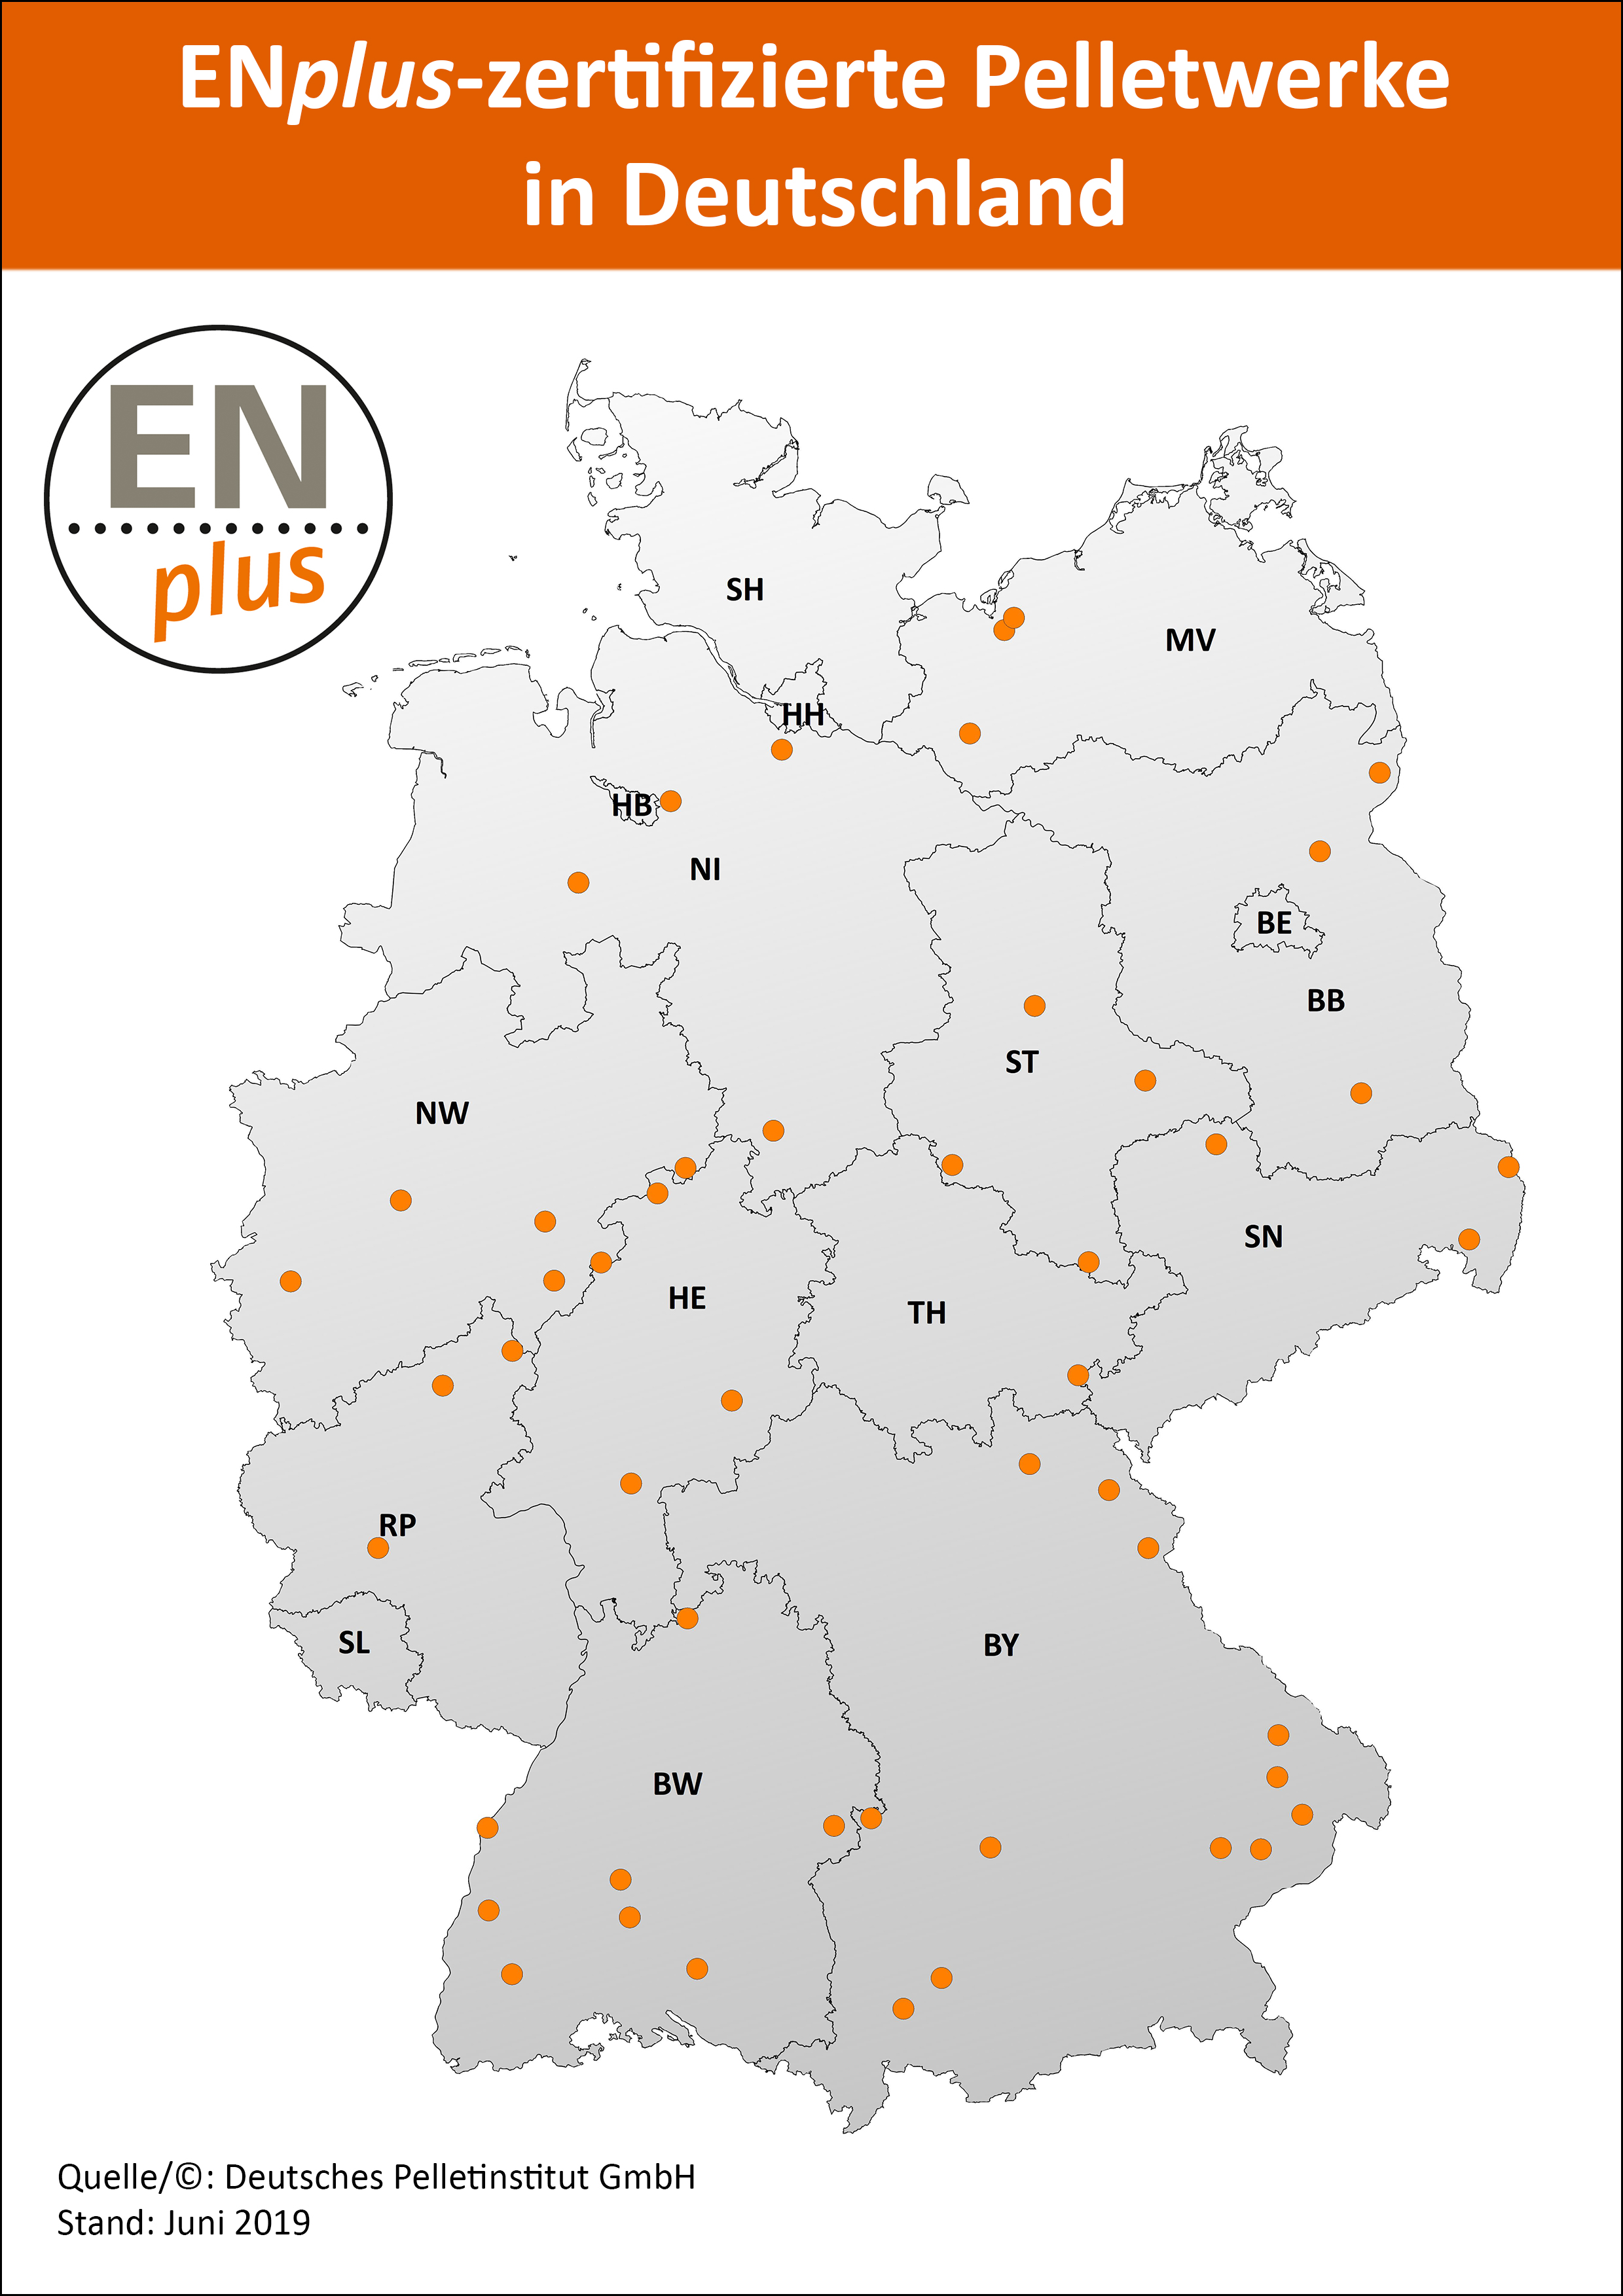 DEPI - ENplus-zertifizierte Pelletwerke in Deutschland (Karte)